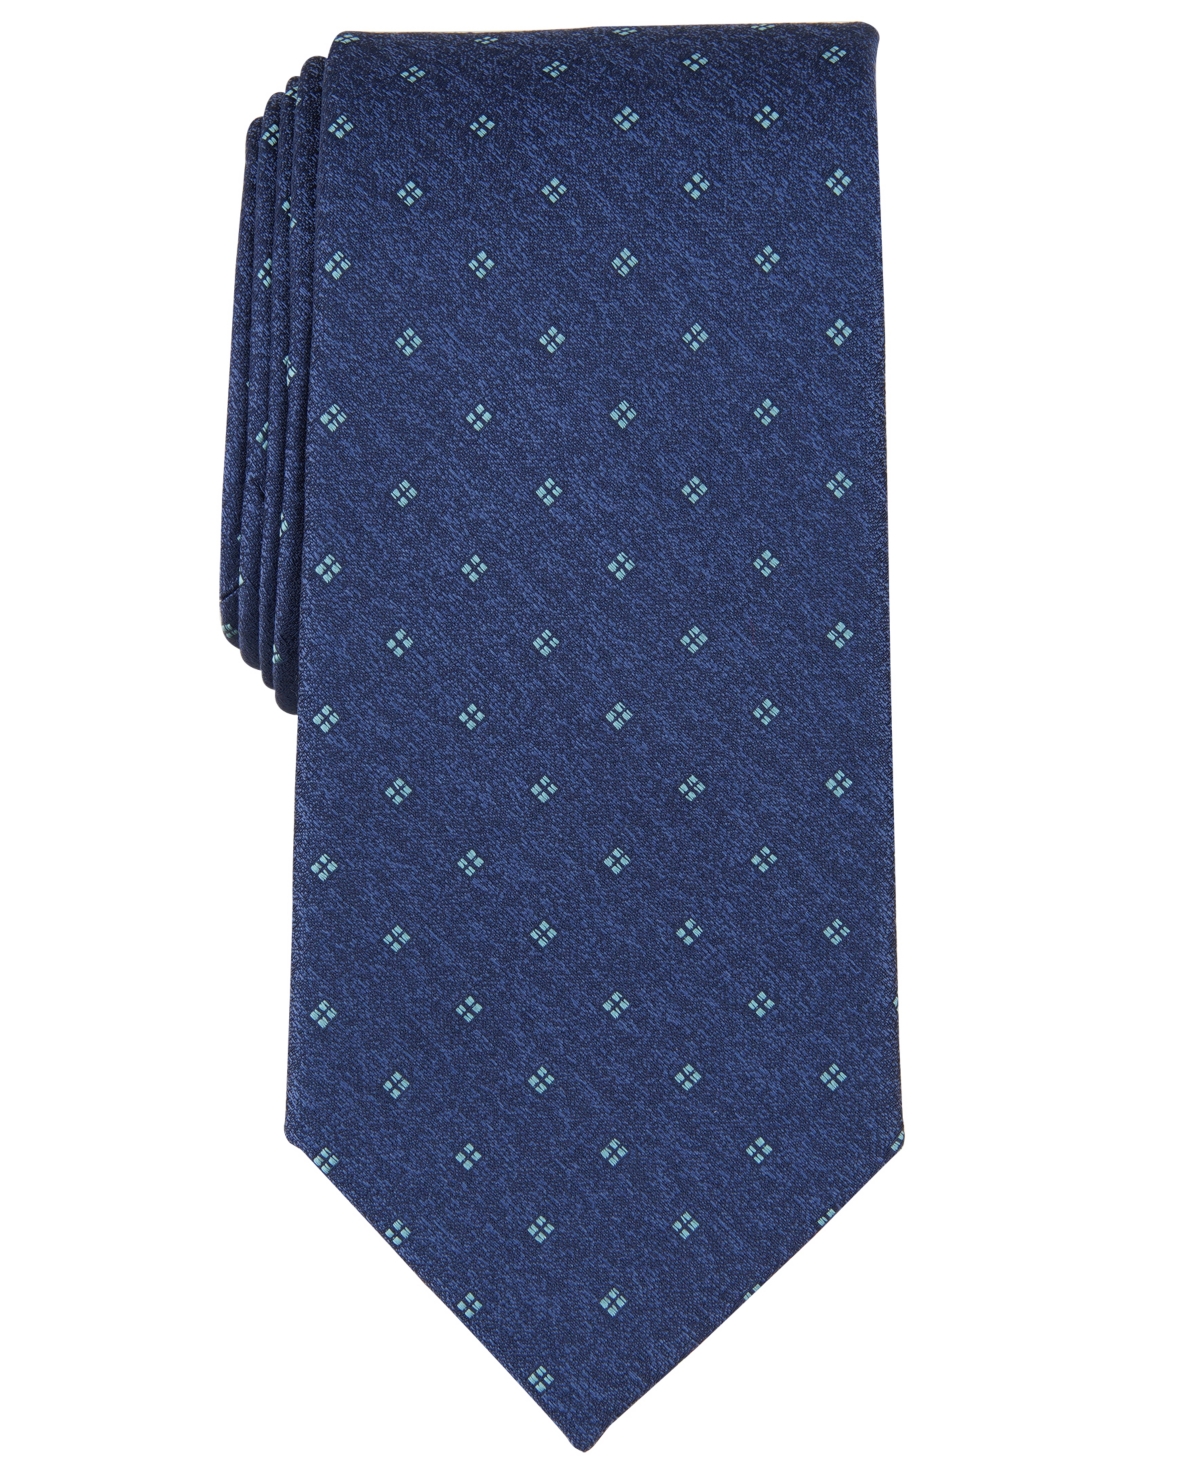 Men's Classic Square-Print Tie - Aqua